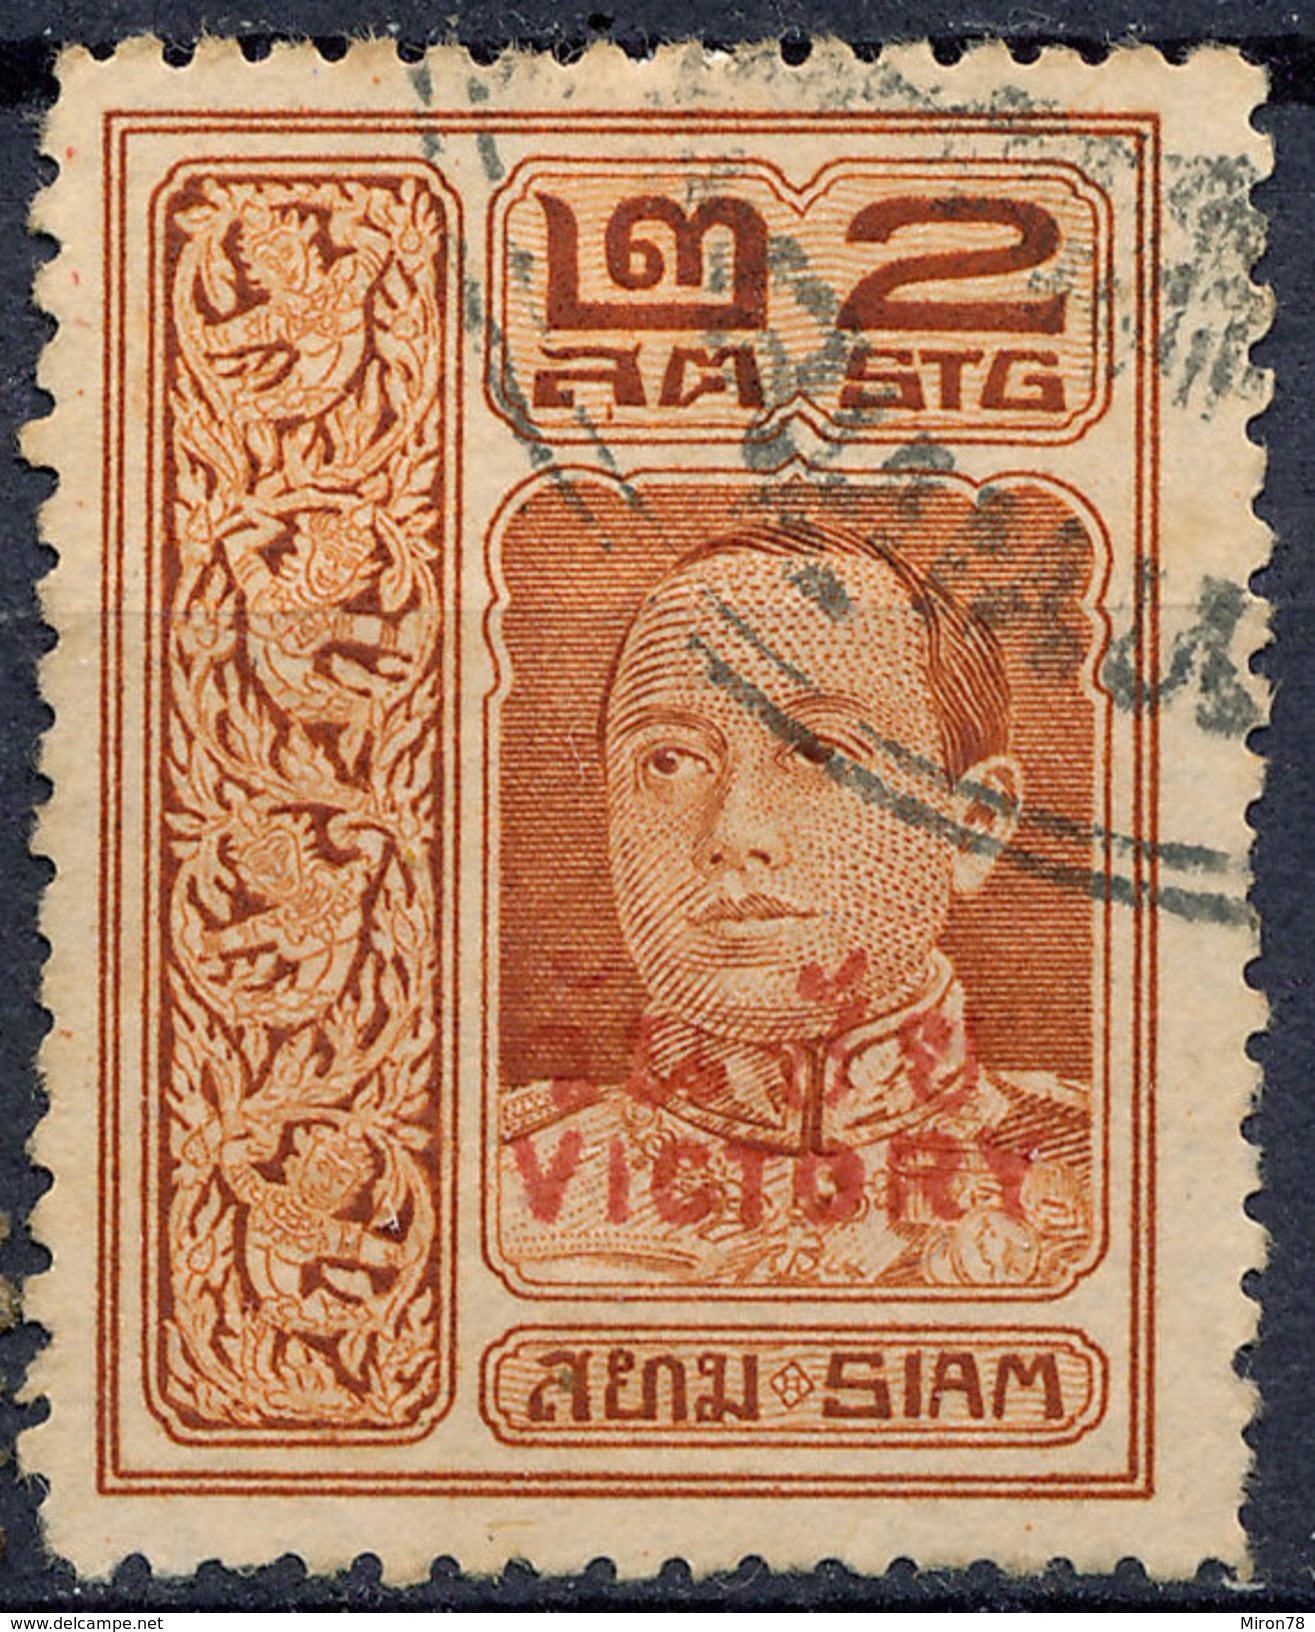 Stamp THAILAND,SIAM 1918 Used Lot#210 - Siam